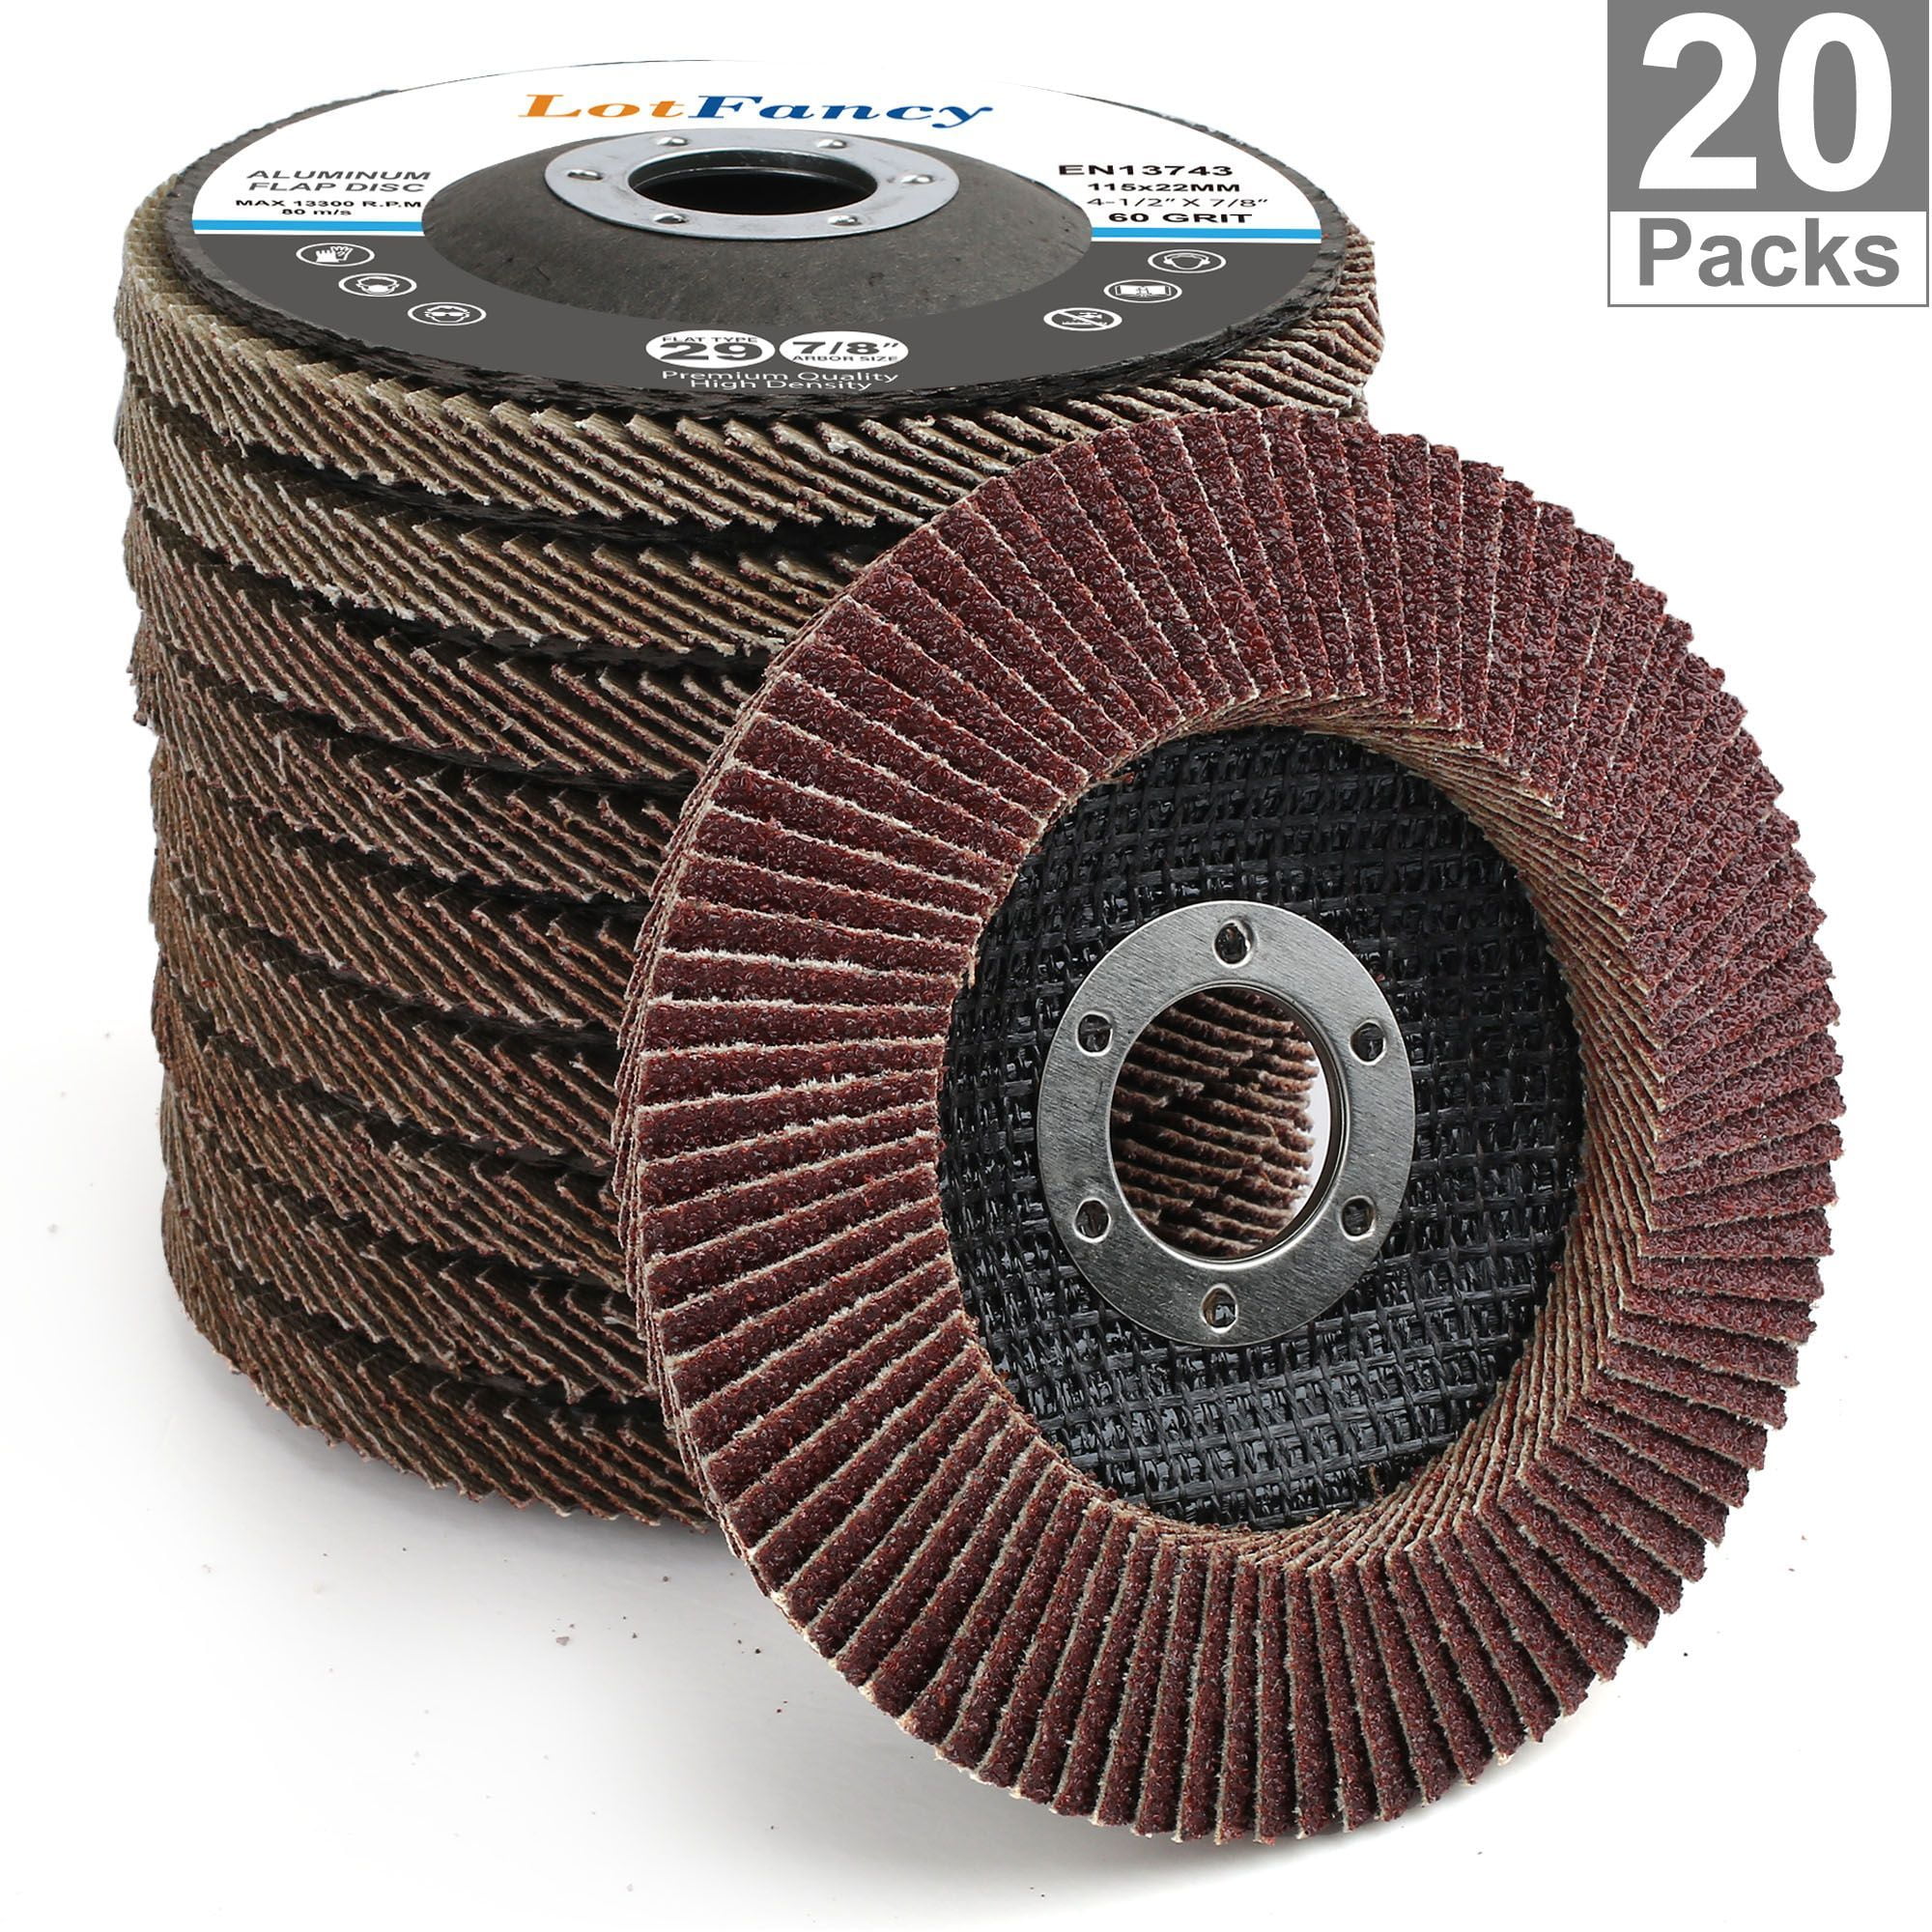 100mm Fibre Sanding Disc Sander Pad Wheels For Angle Grinder Metalworking 20pcs 